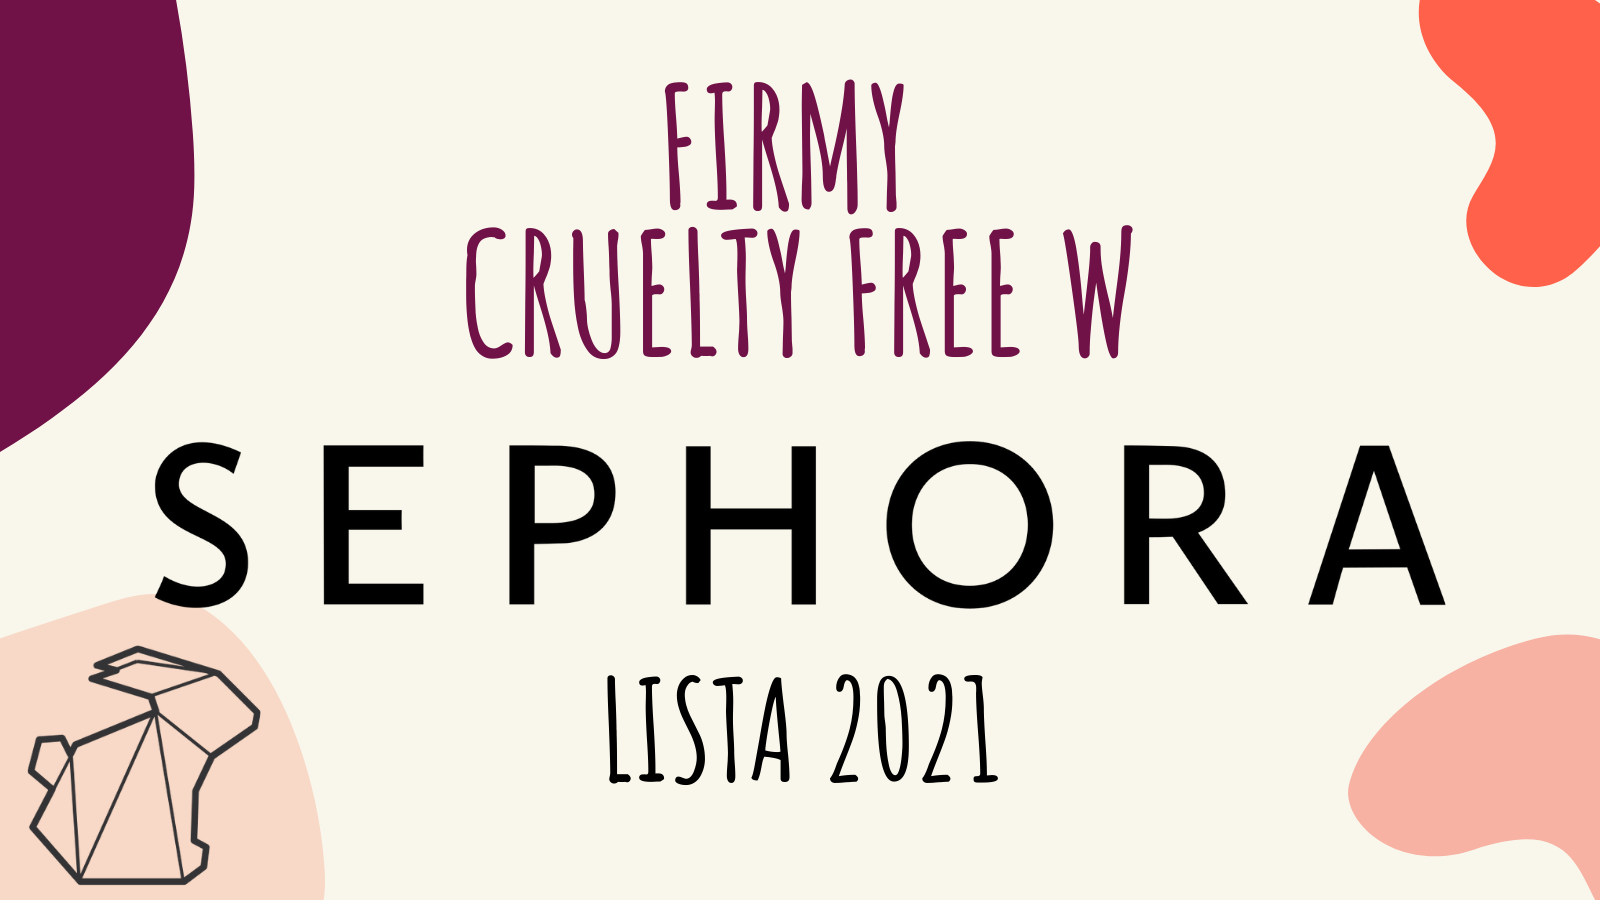 FIRMY CRUELTY FREE W SEPHORA / LISTA 2021